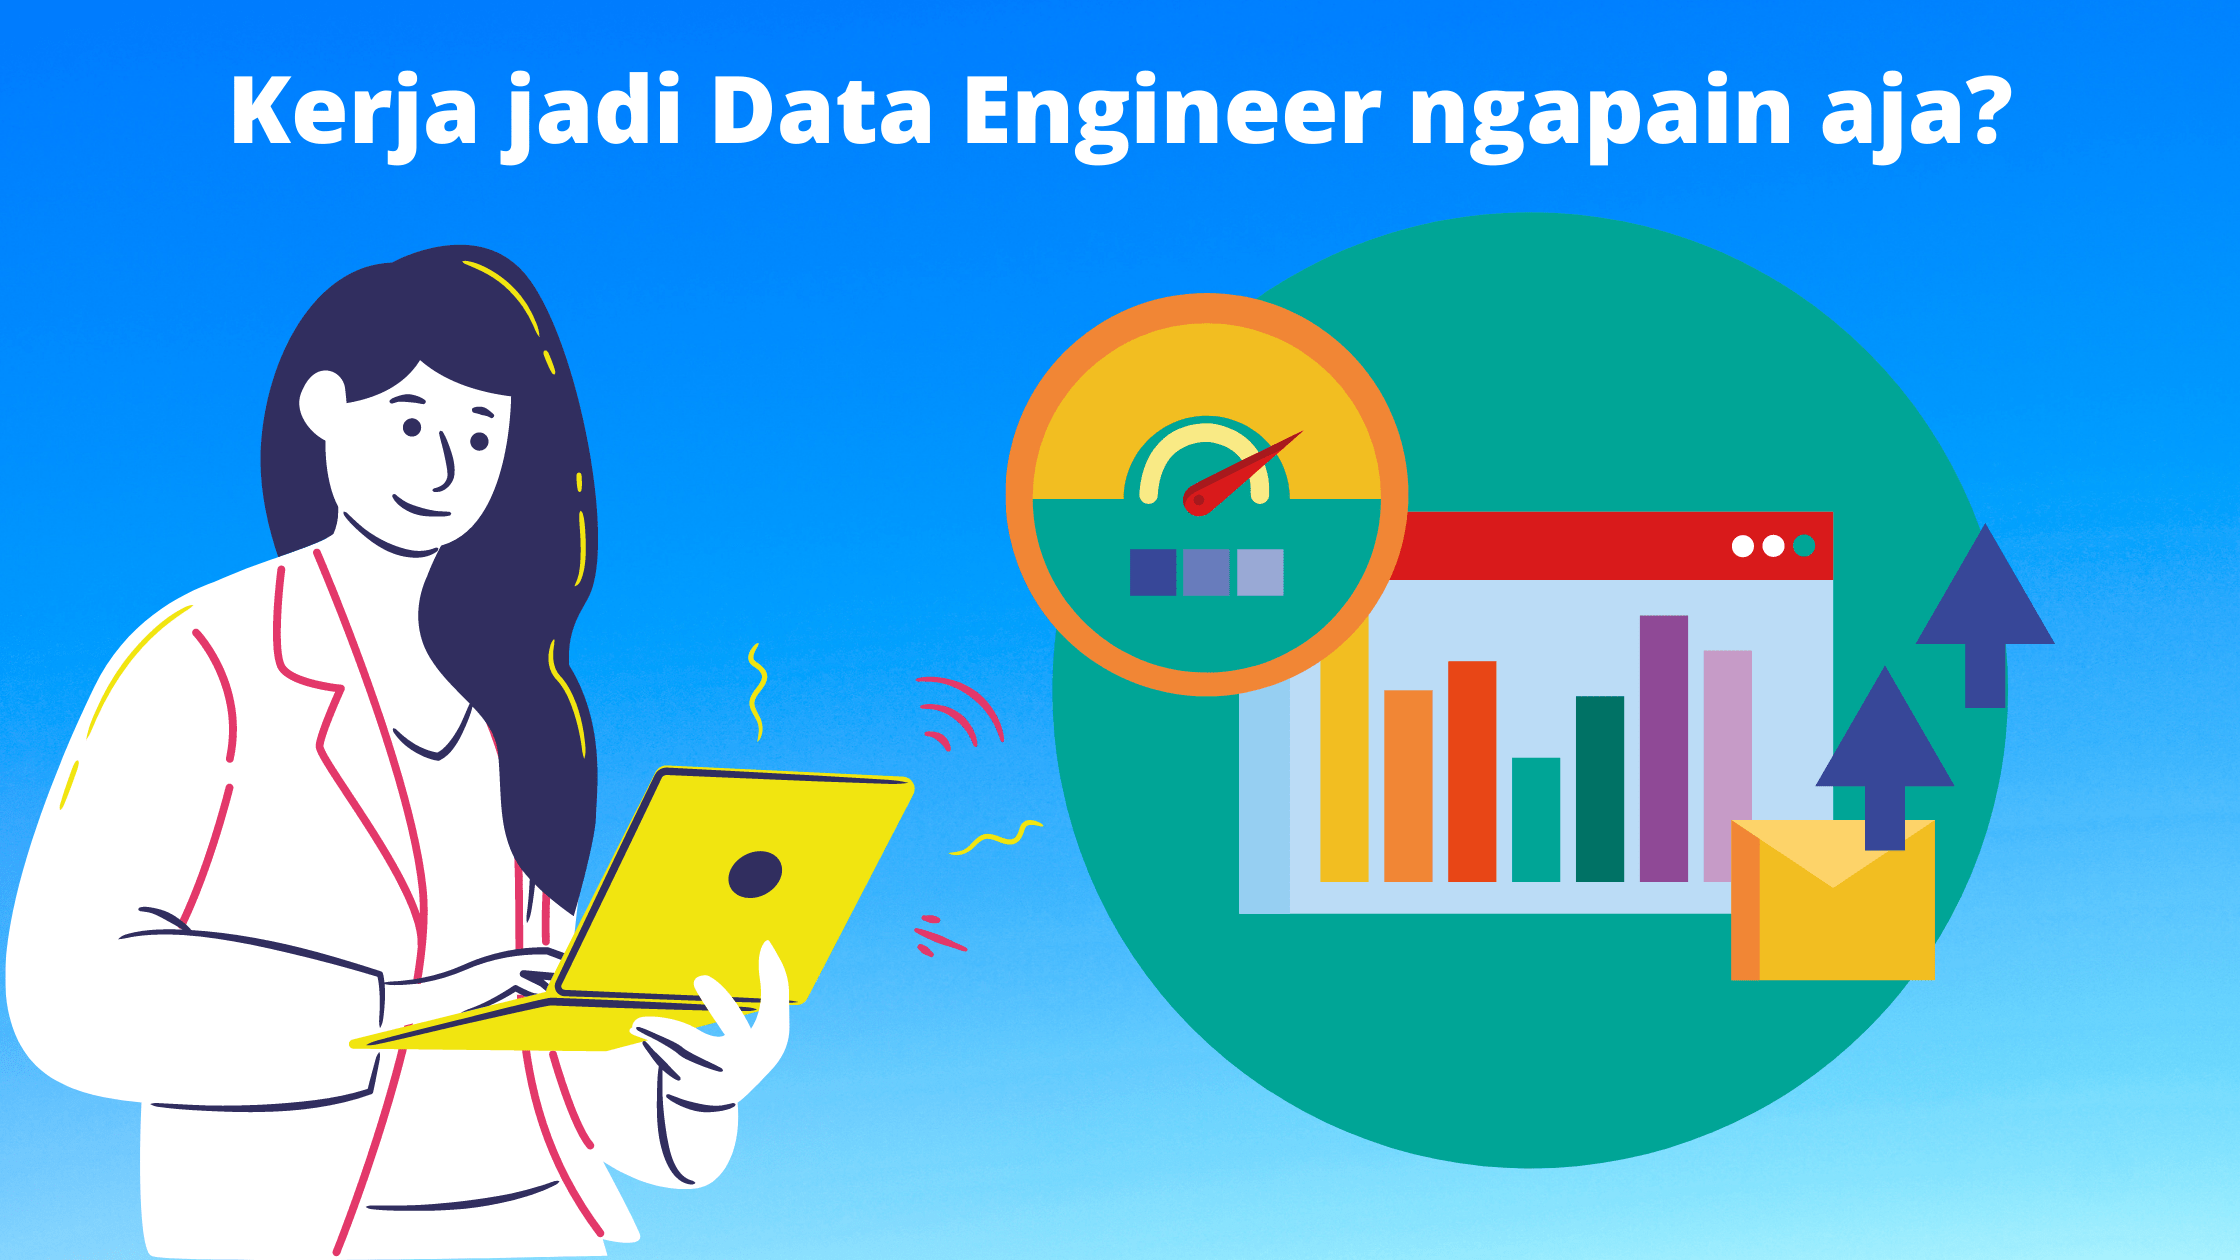 Kerja jadi Data Engineer ngapain aja?